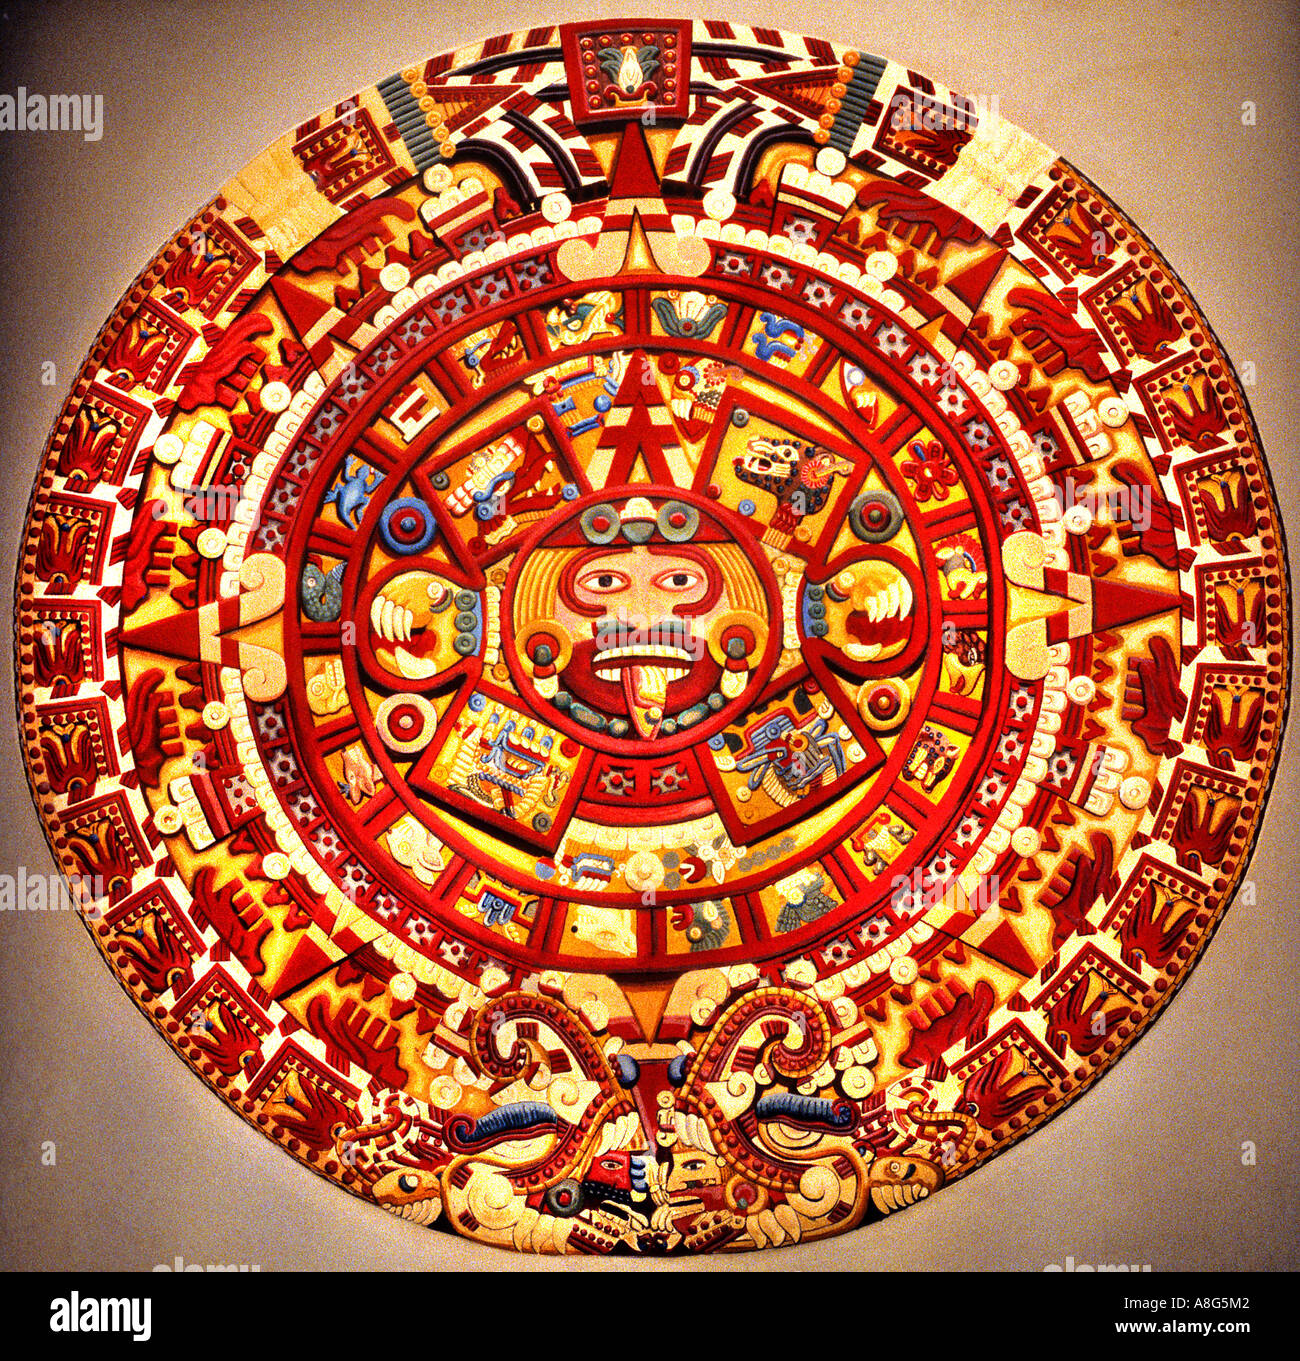 Календарь ма й я слушать. Камень солнца ацтеков музей Мехико. Календарь ацтеков камень солнца. Солнечный камень древних ацтеков. Древний Ацтекский календарь.